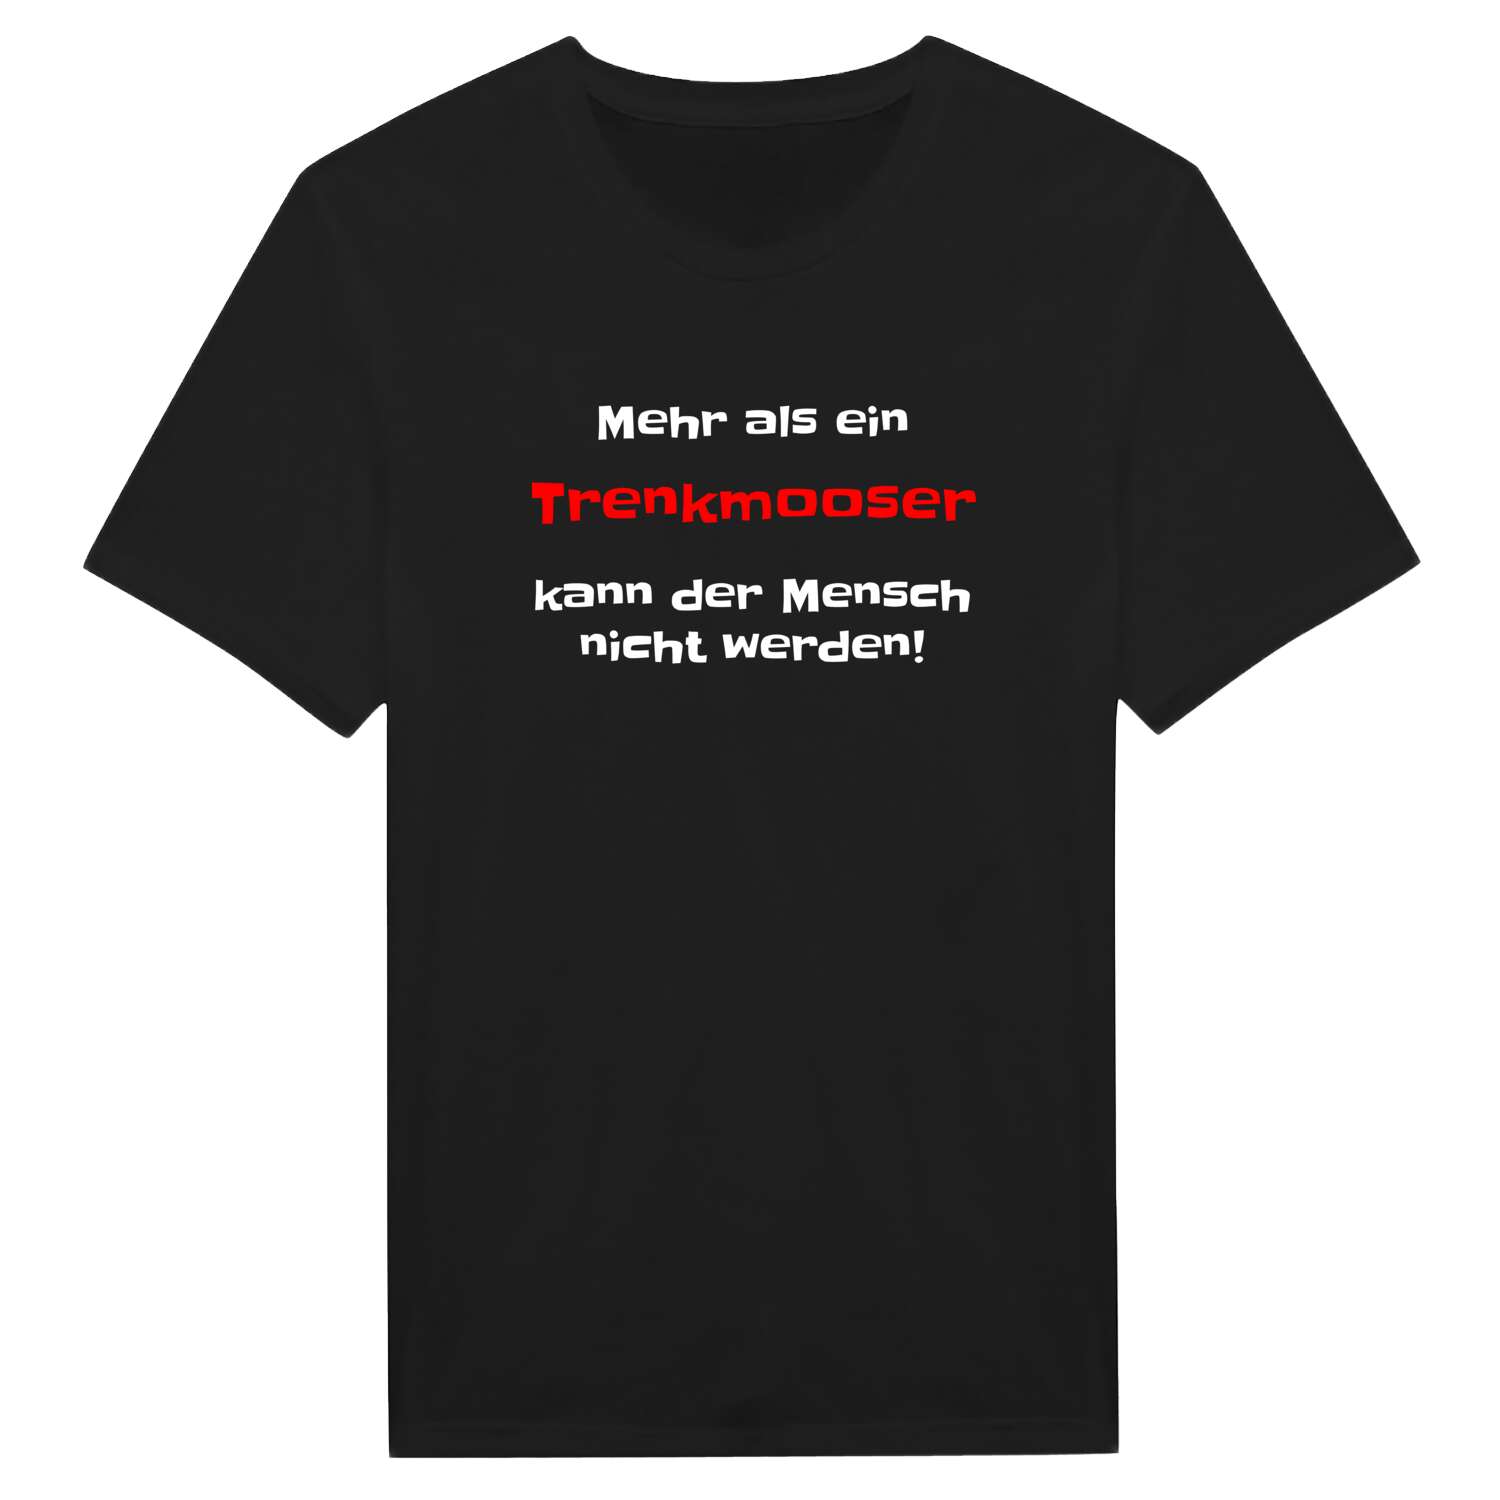 Trenkmoos T-Shirt »Mehr als ein«